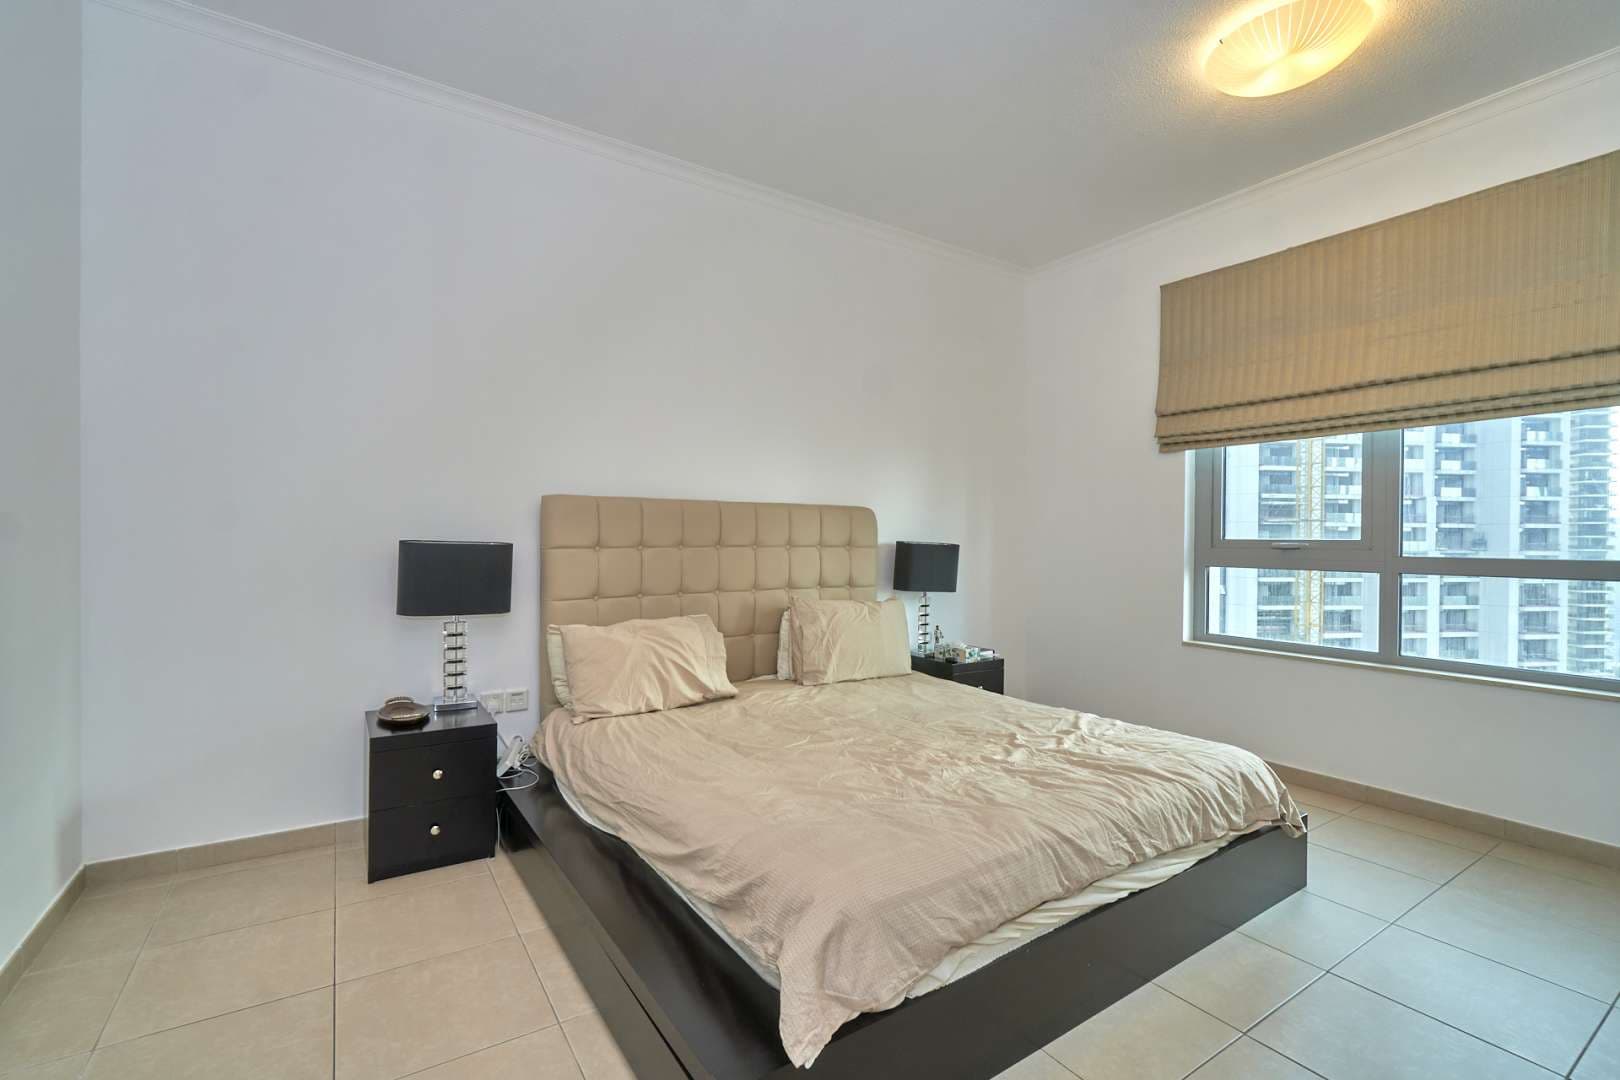  Bedroom Apartment For Rent The Residences Lp08425 1624af4265ded600.jpg